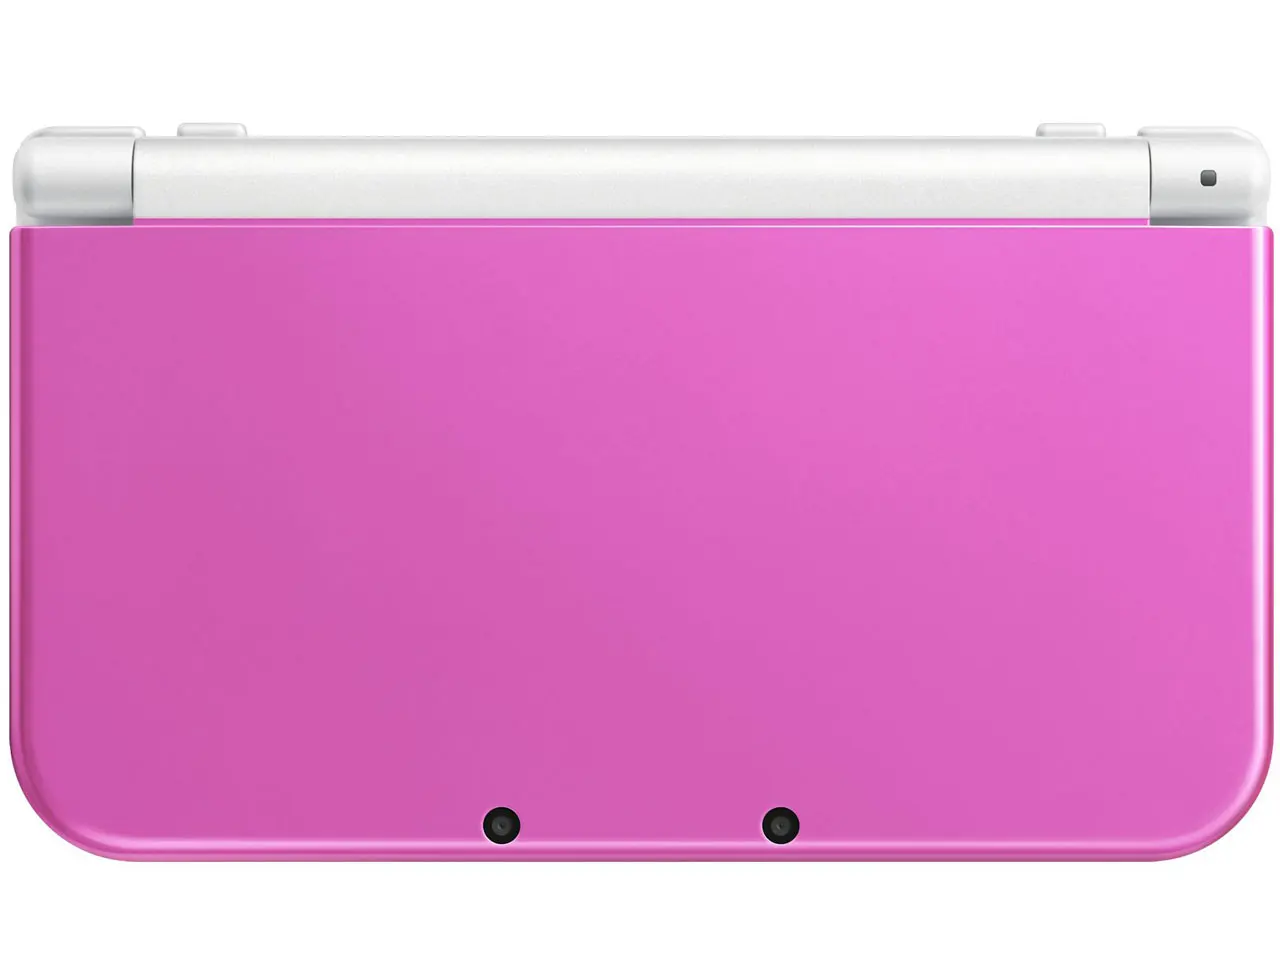 3DS Handheld Spielkonsole Touchscreen LCD displays Kreuz Tastatur System Konsole für Nintendo 3DSLL 3DSXL/new 3DSXL Handheld images - 6